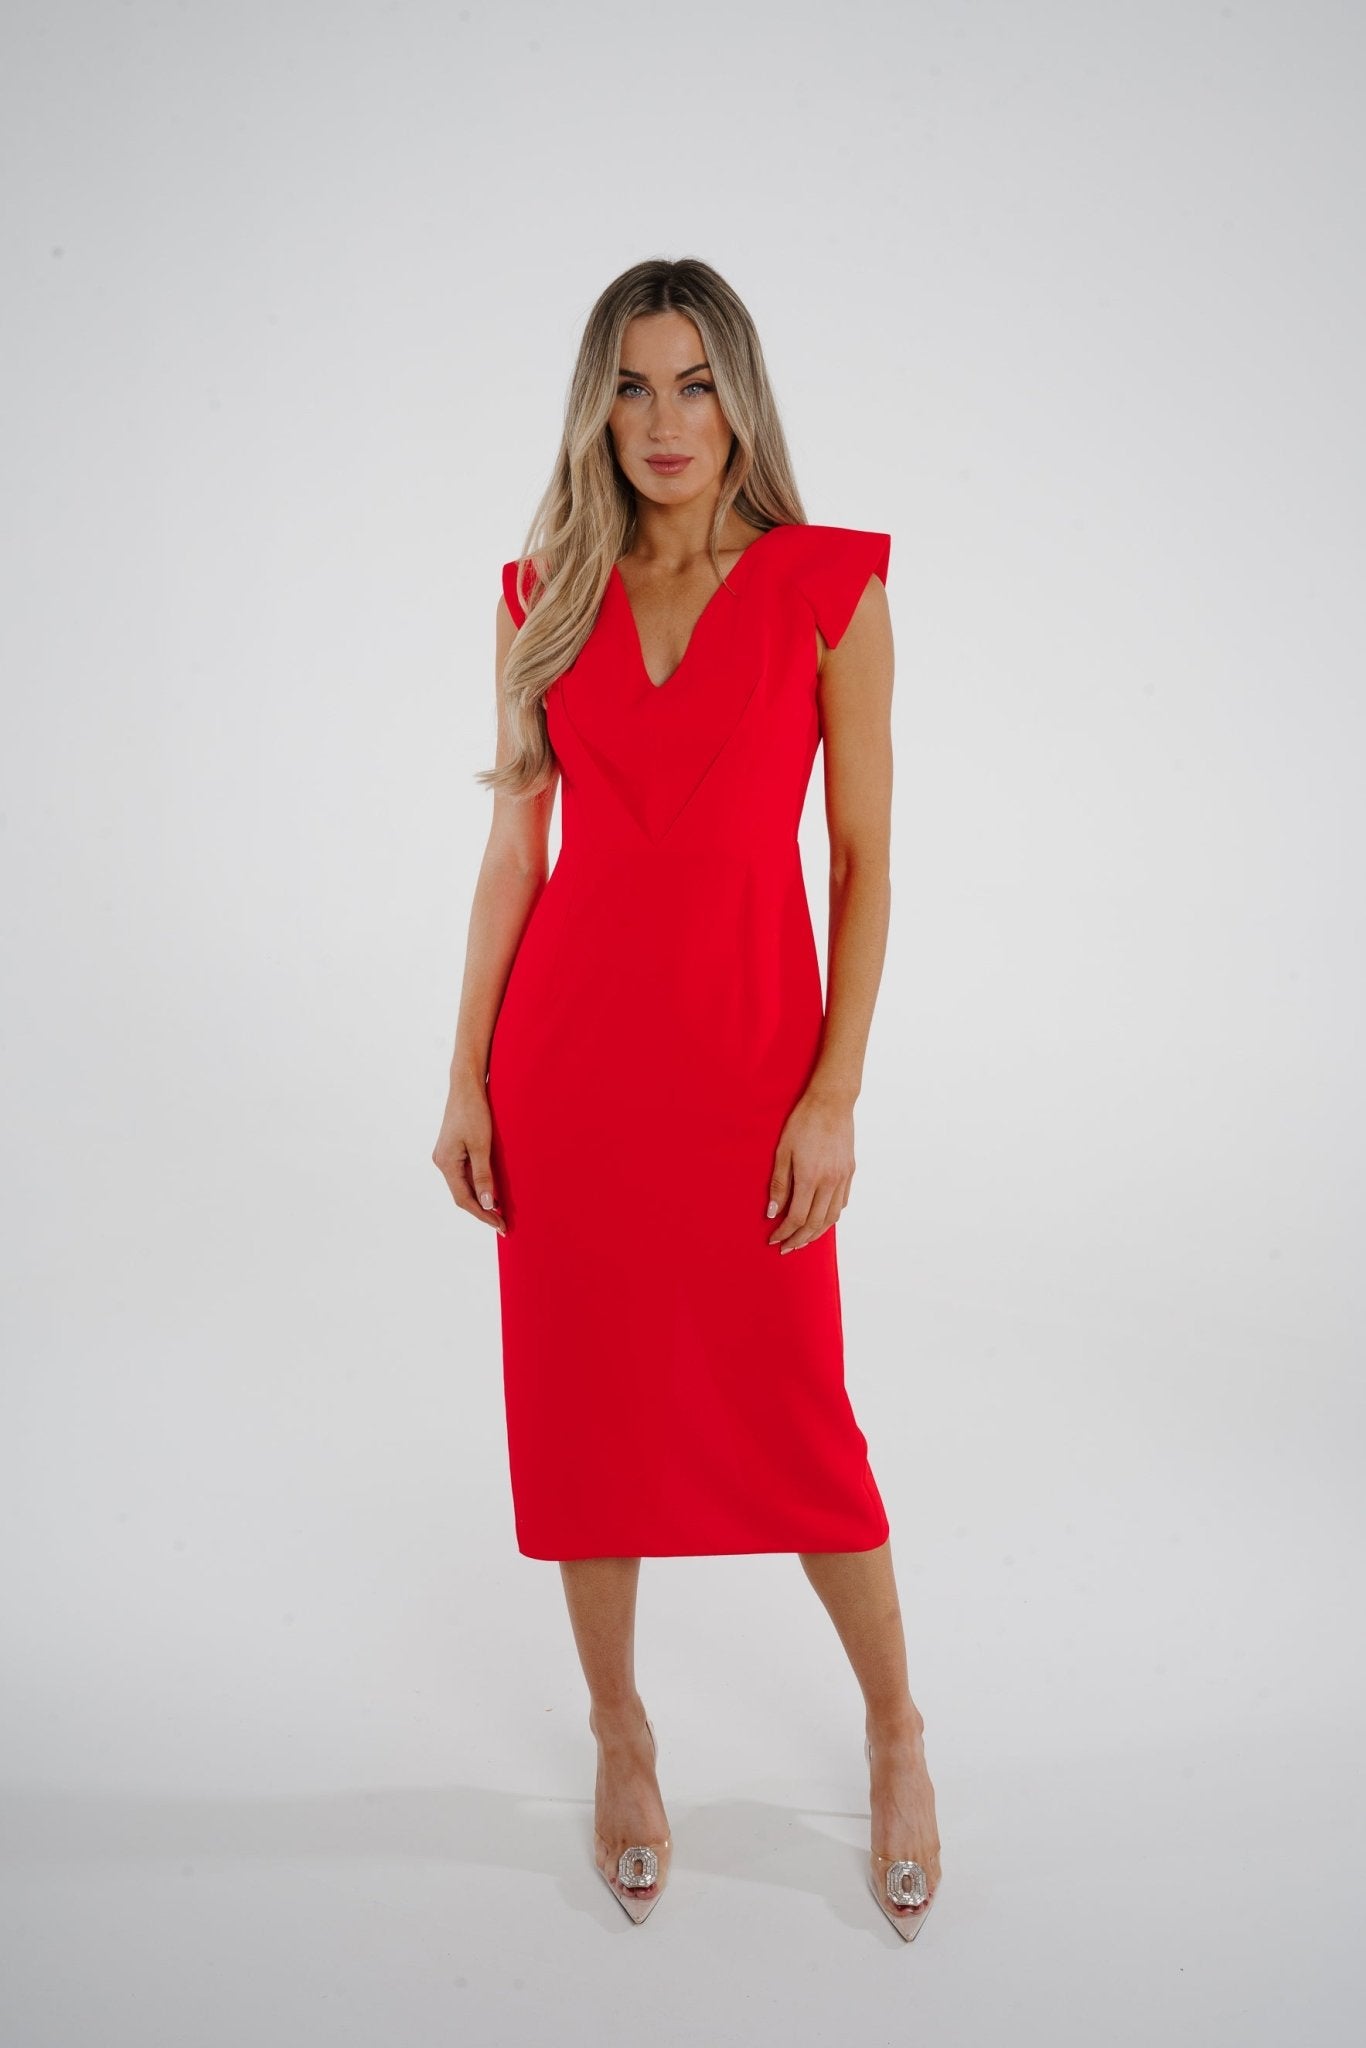 Kayla V-Neck Dress In Coral Red - The Walk in Wardrobe